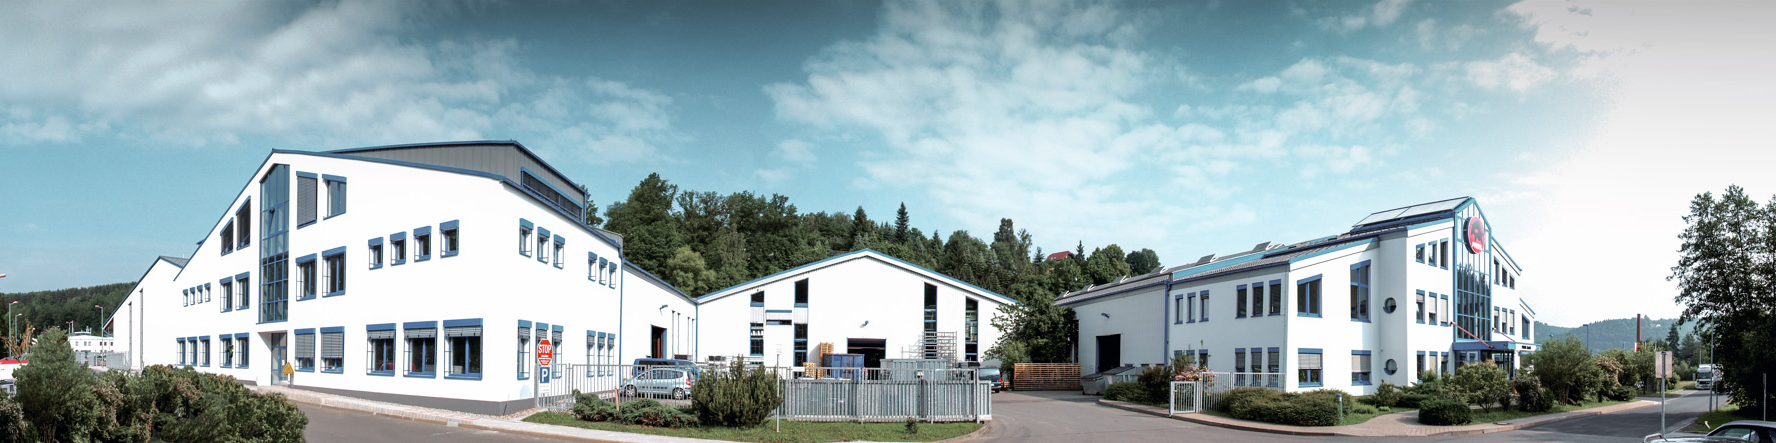 PREFA-virksomhedsbygning med blå vinduer og hvid facade i Wasungen, Tyskland.